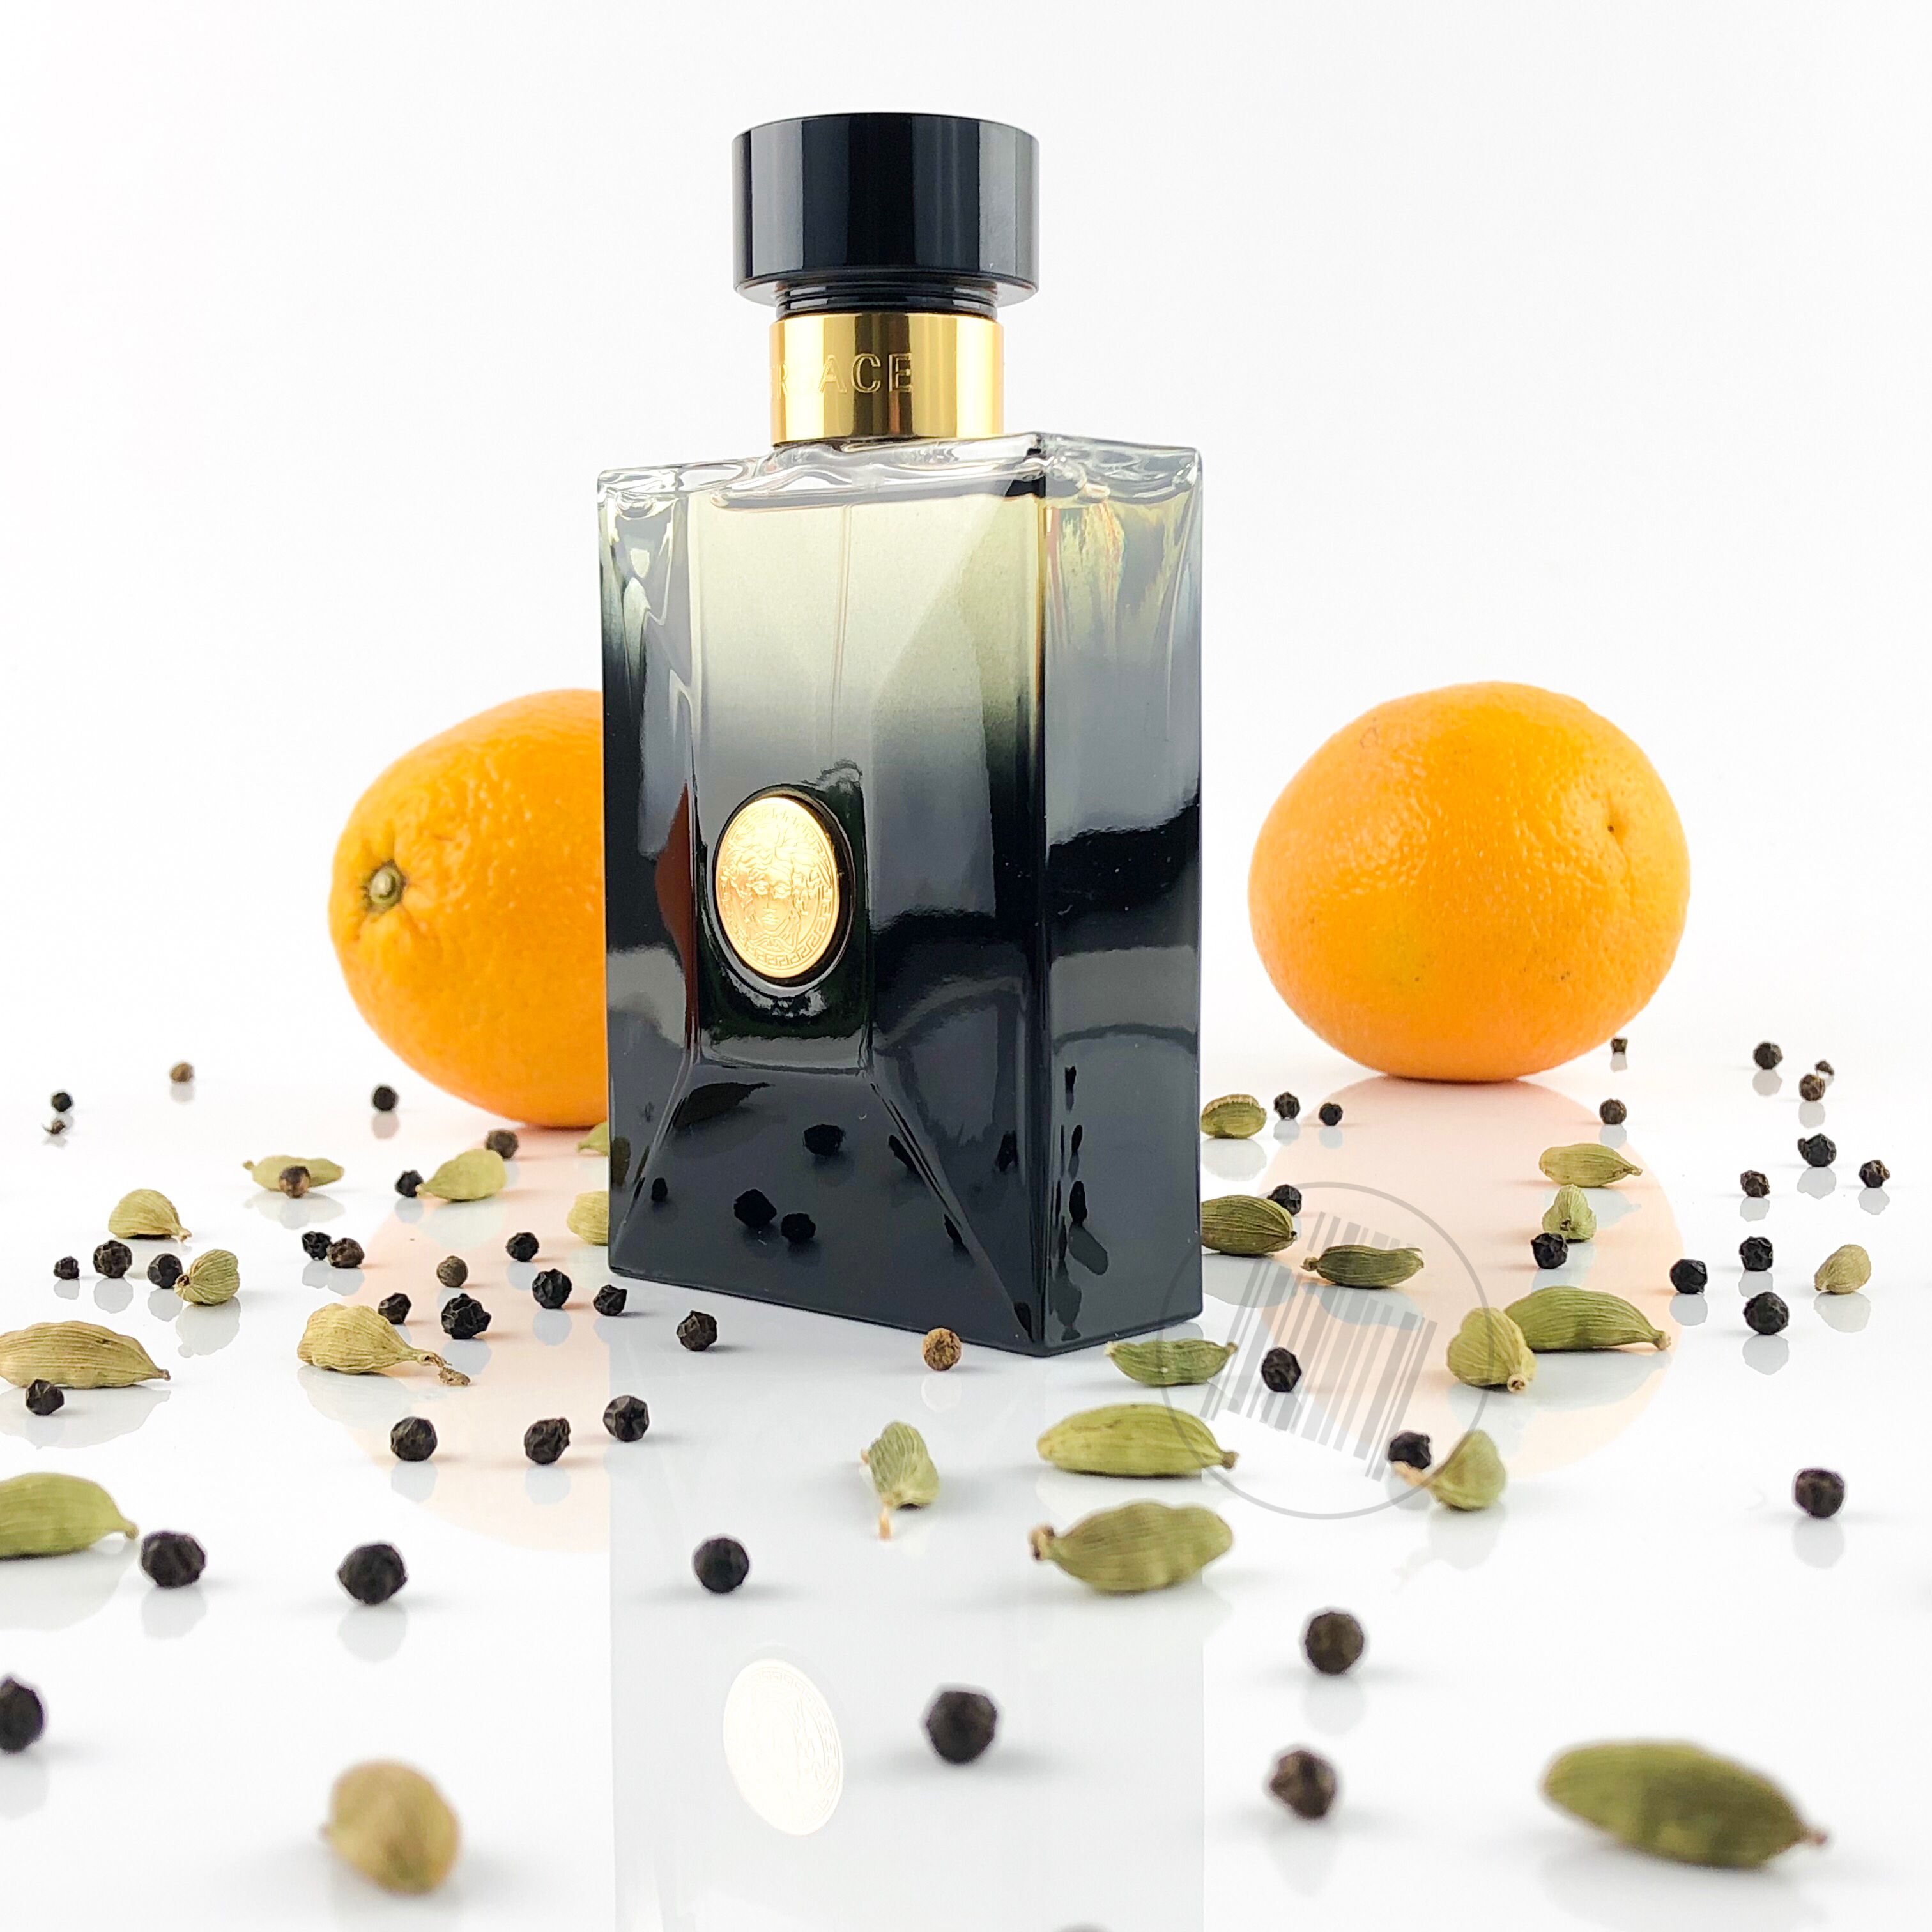 Versace Pour Homme Oud Noir 100 ml Eau De Perfume Spray for Men